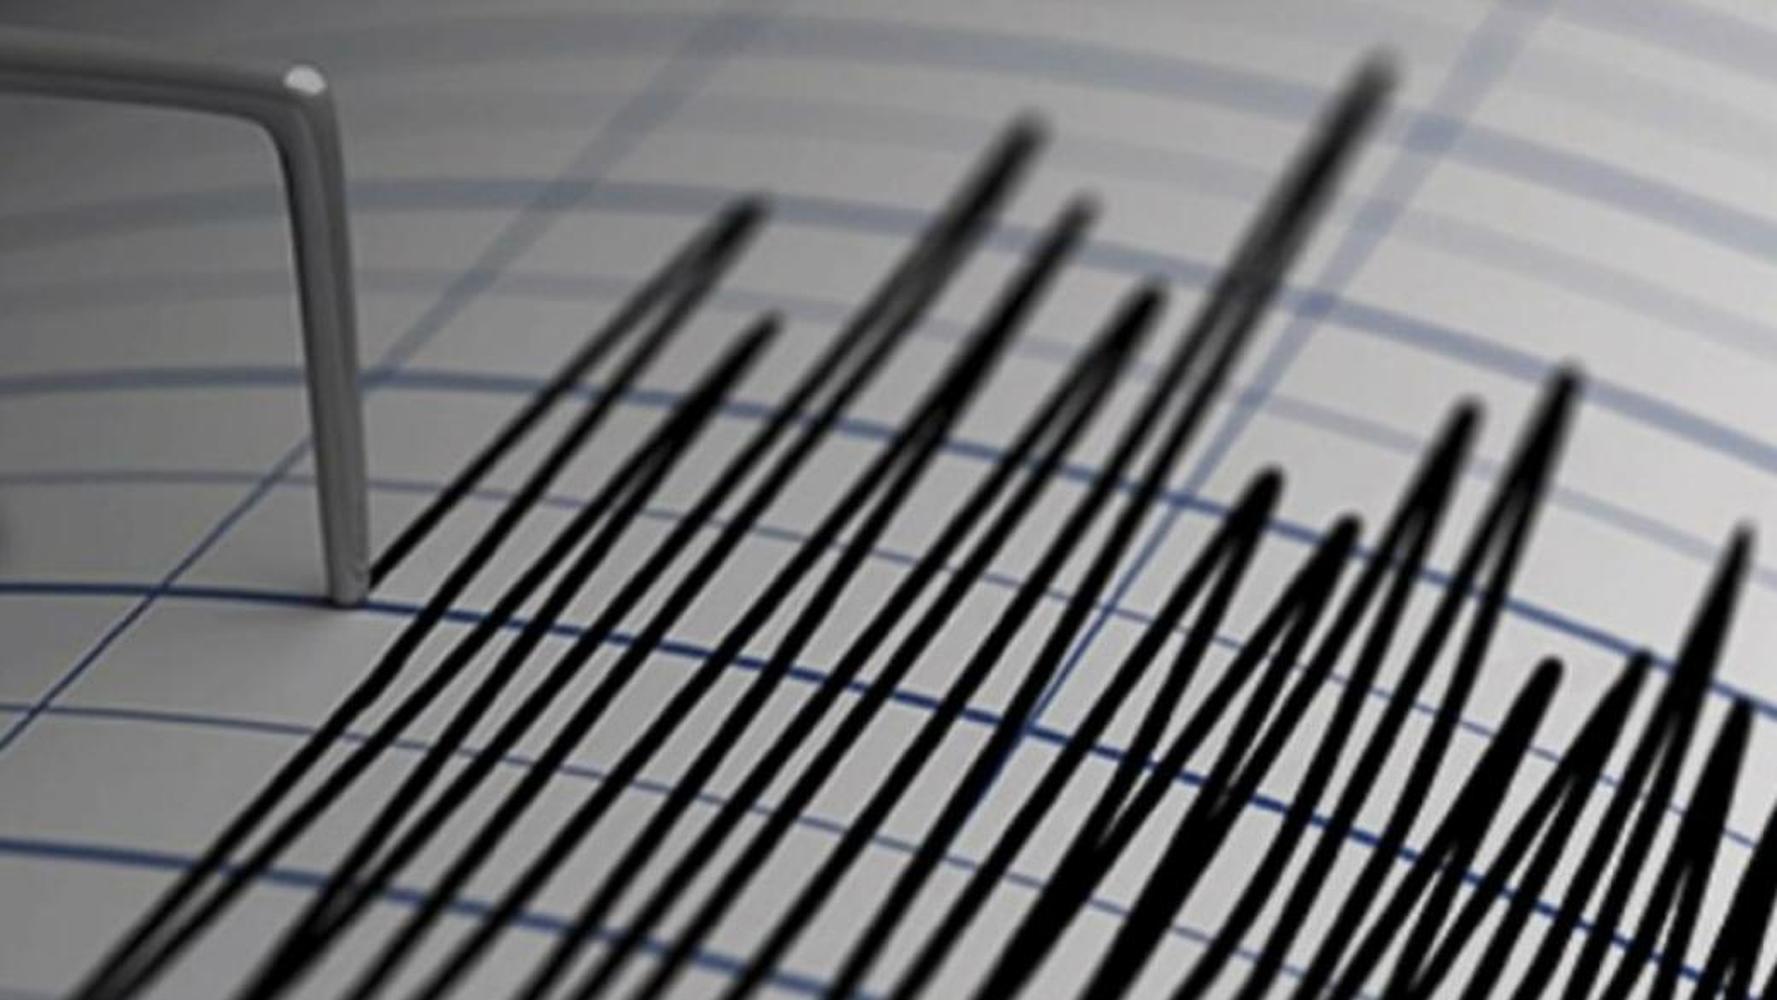 В Кыргызстане произошло землетрясение силой 6 баллов в эпицентре. Сколько баллов было в регионах? — Today.kg